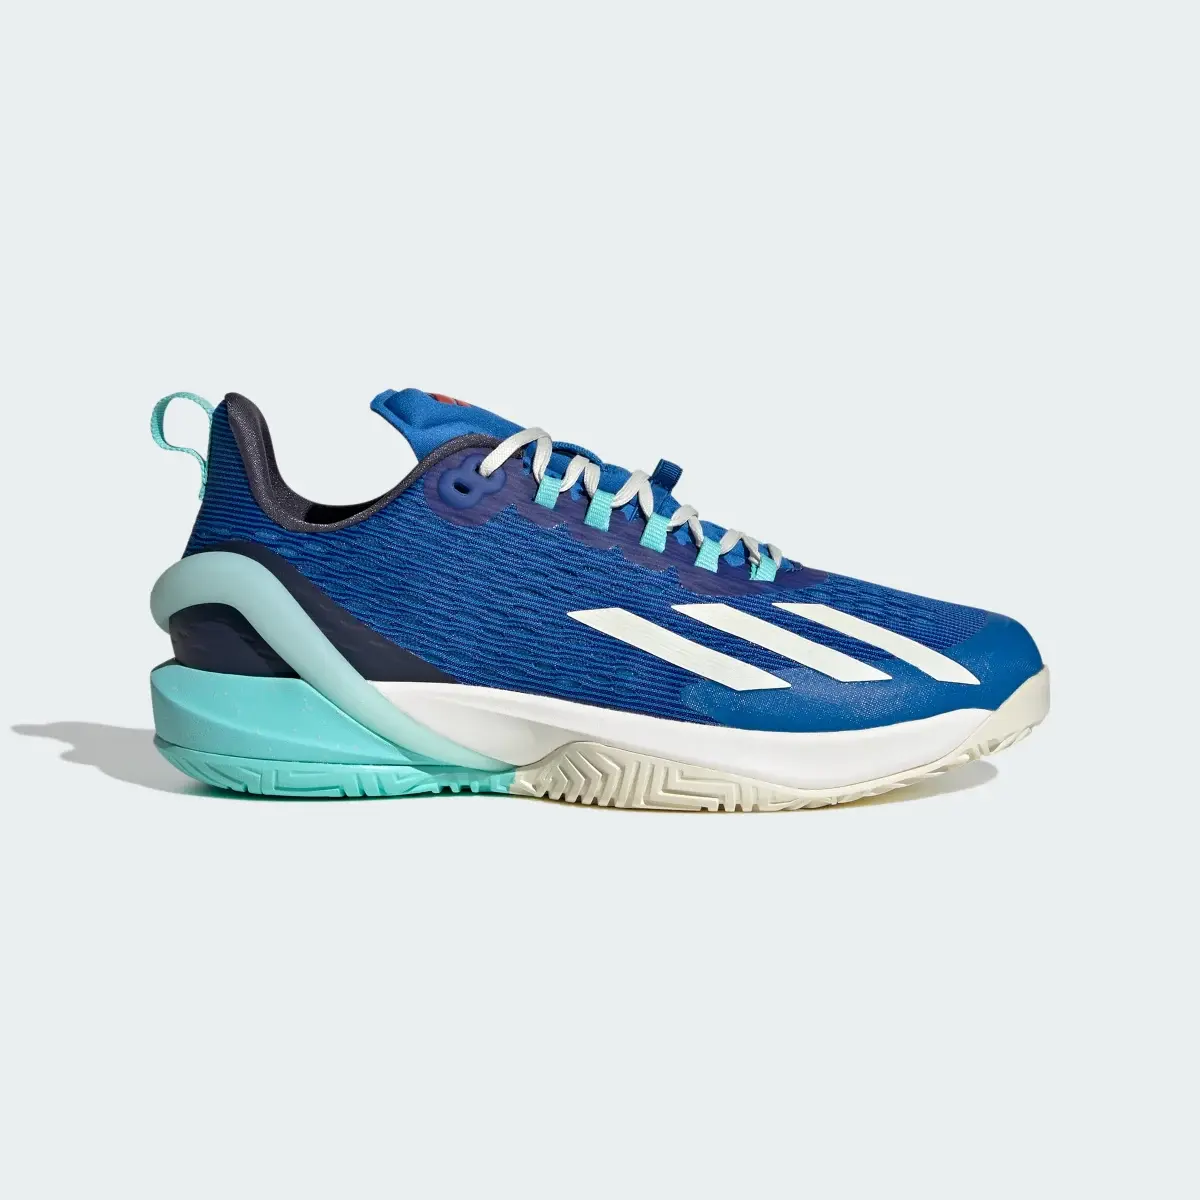 Adidas adizero Cybersonic Tennis Shoes. 2